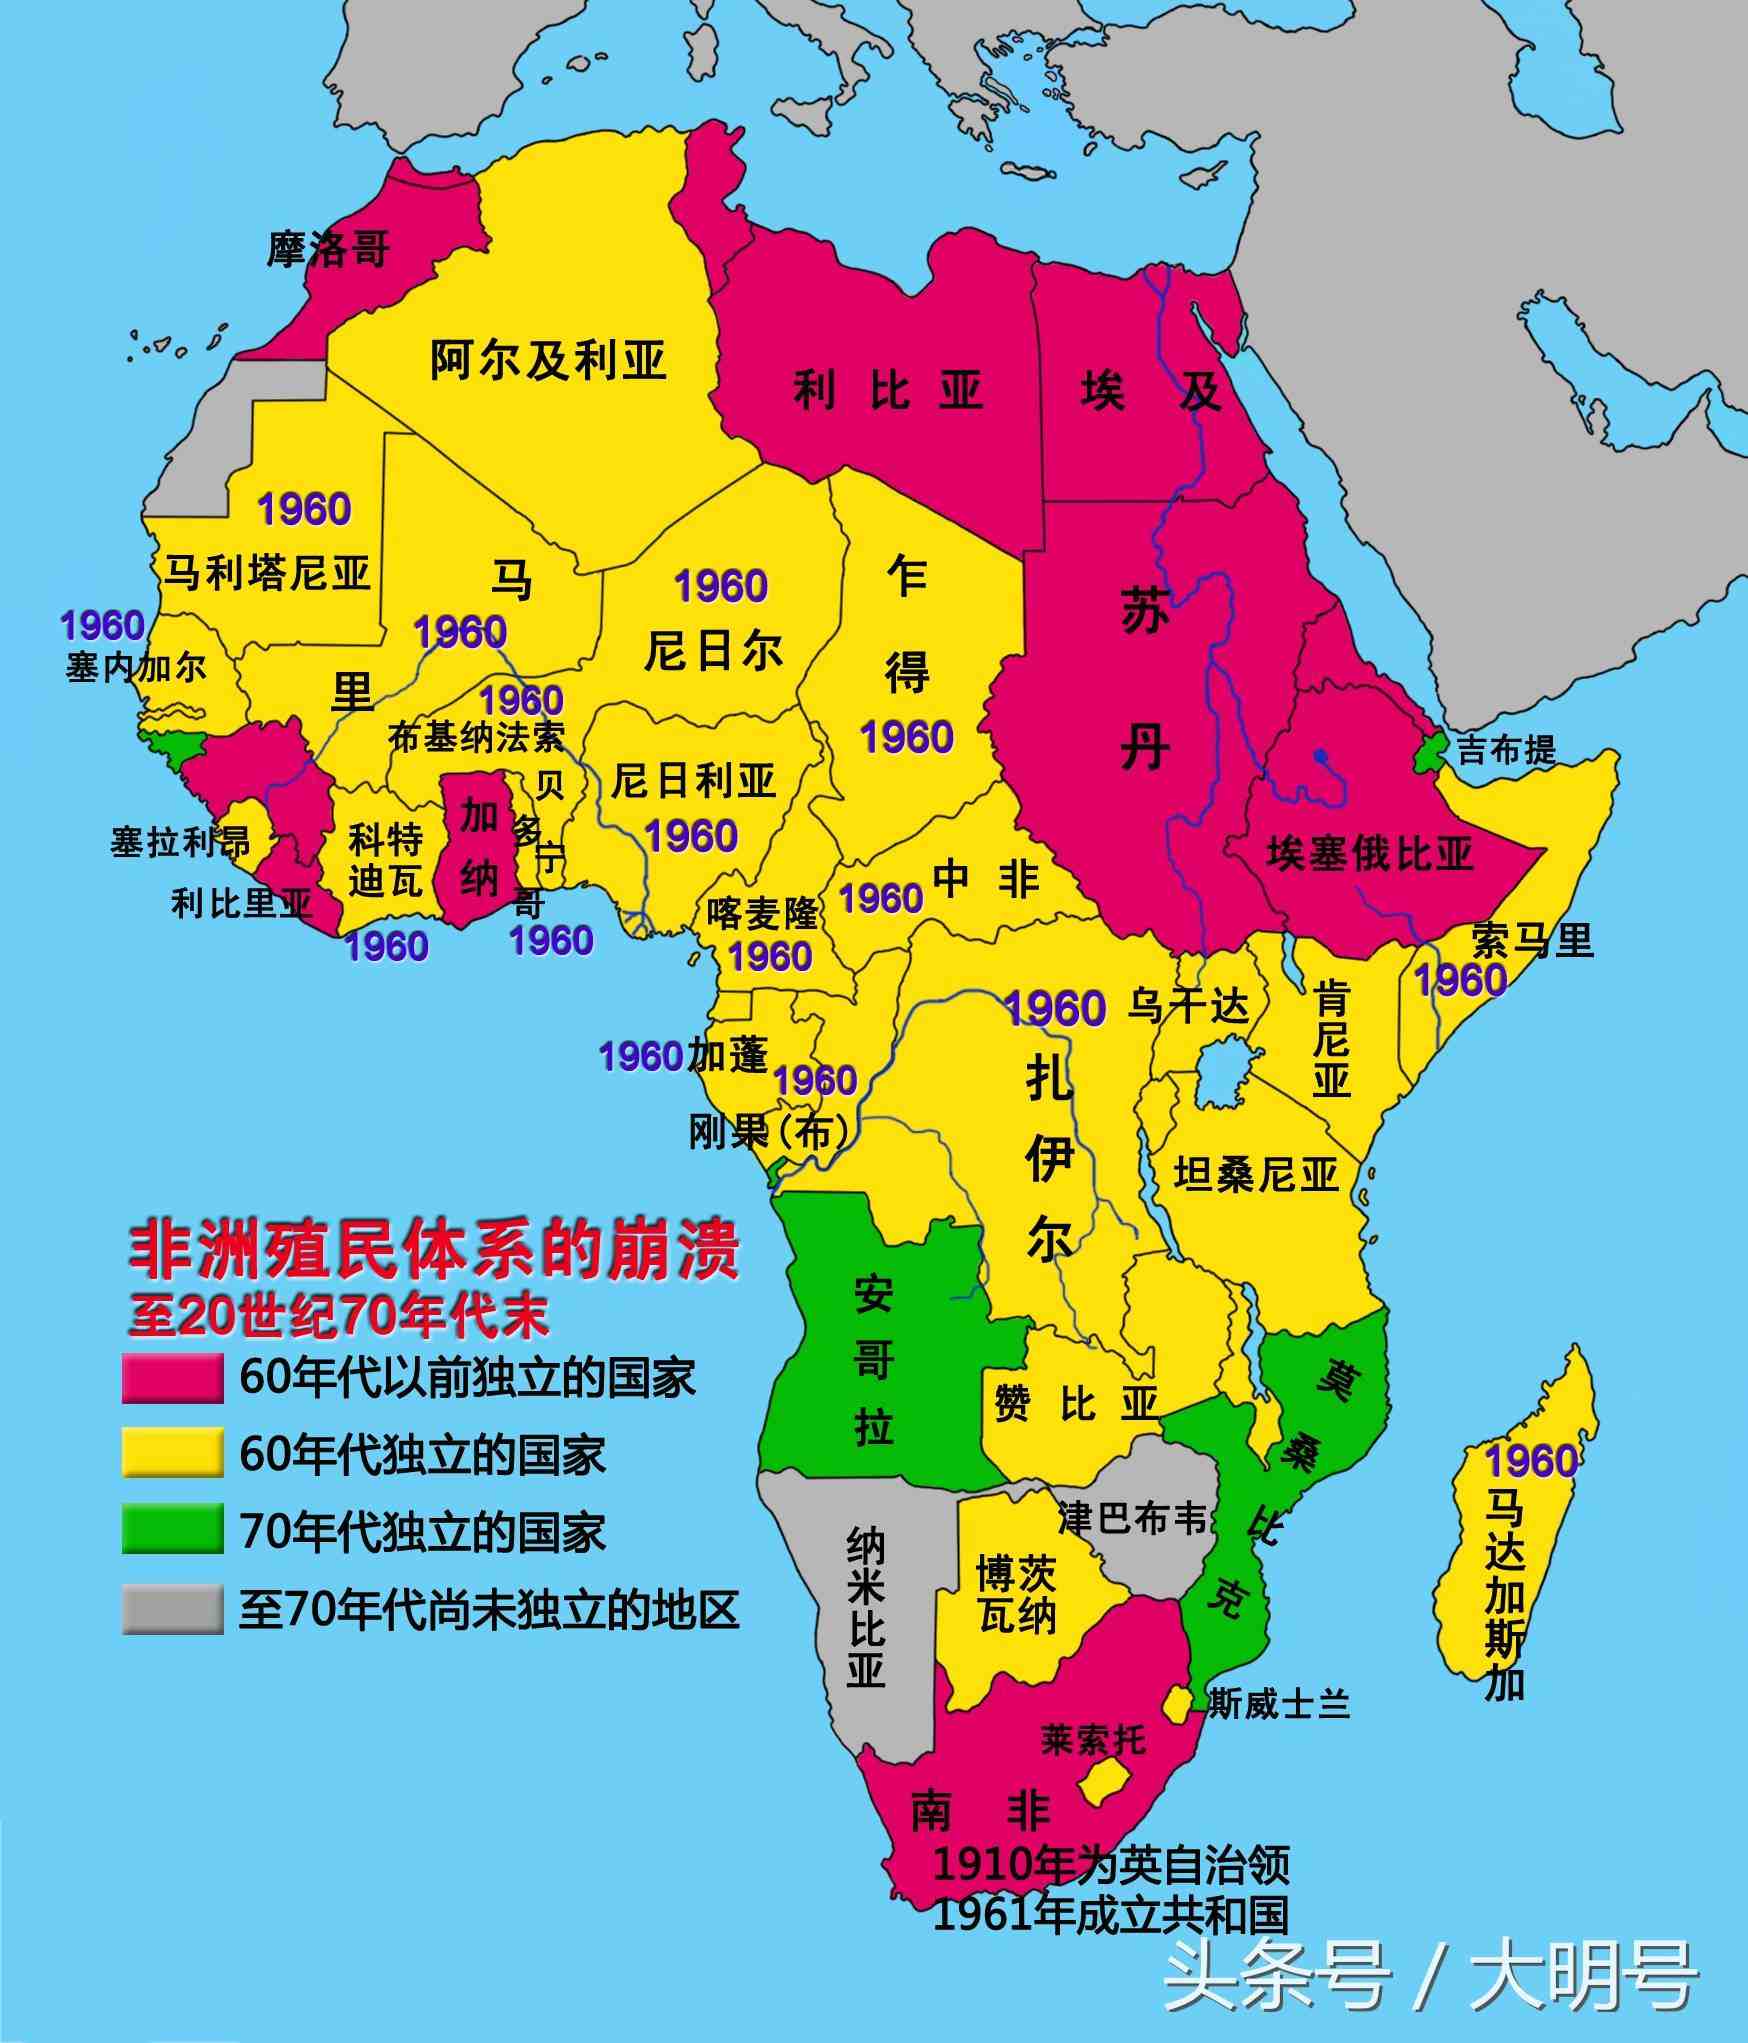 西撒哈拉的历史和现状，为何成为非洲唯一没有独立的地区？